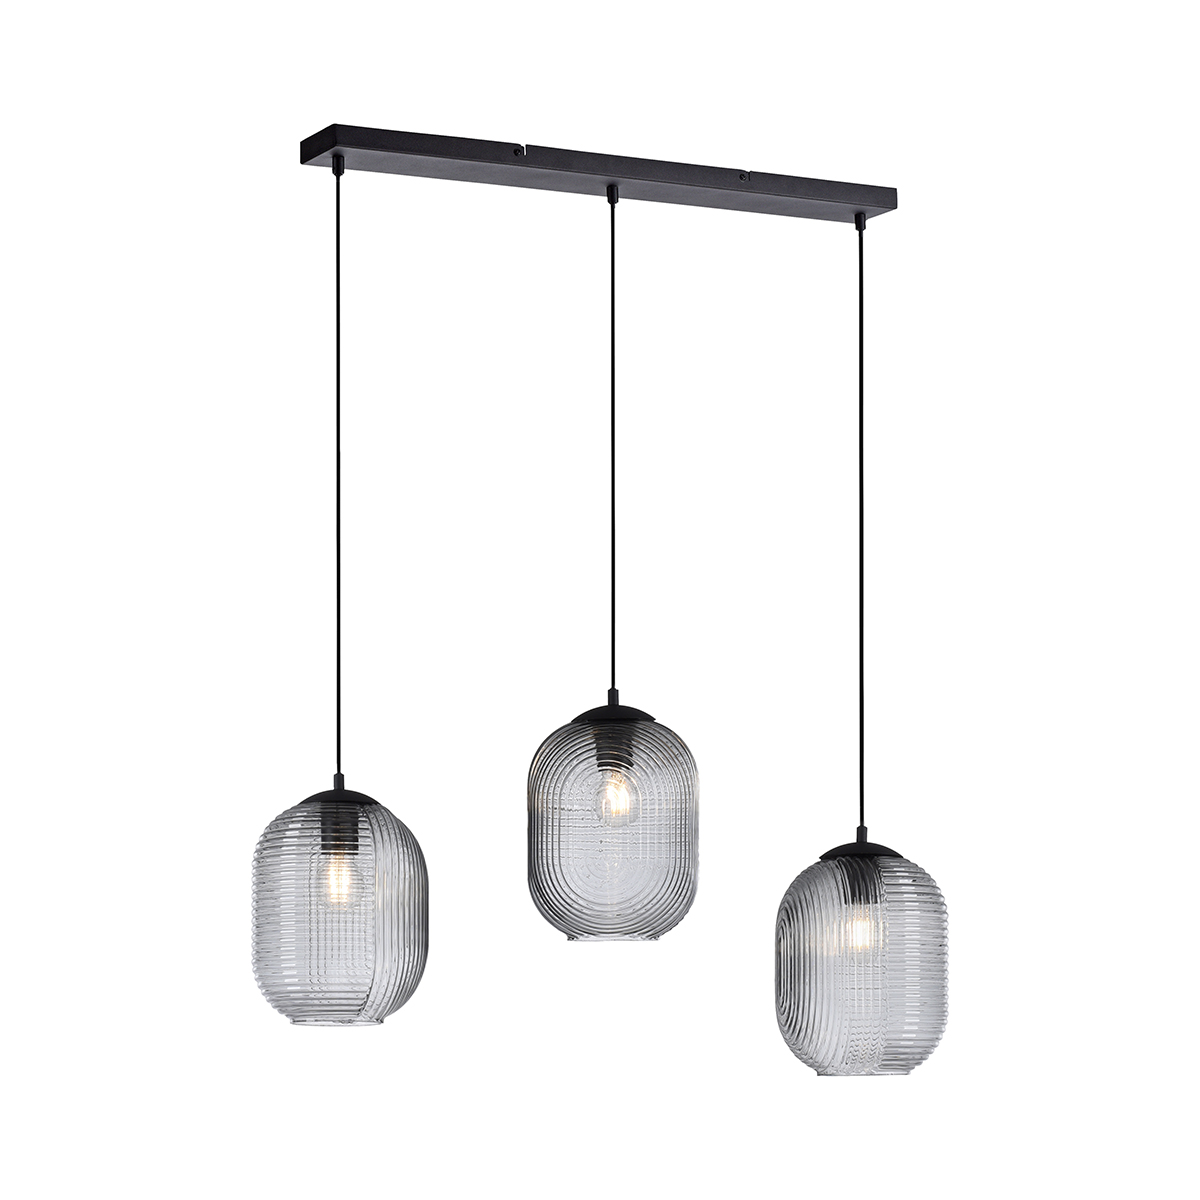 Paul Neuhaus Art deco hanglamp zwart met smoke glas 3-lichts - Chris